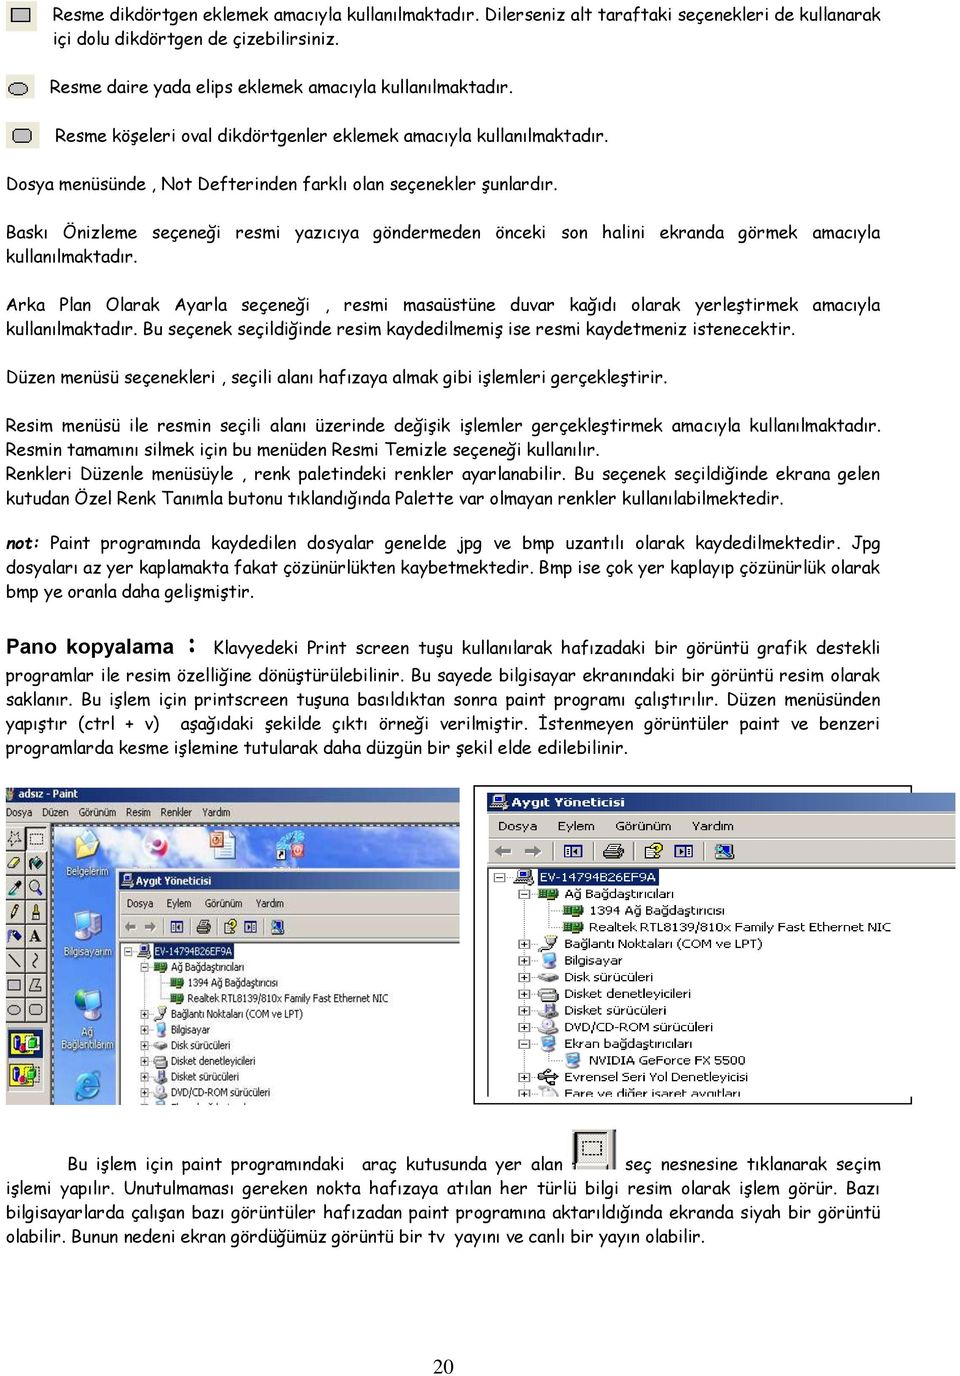 Baskı Önizleme seçeneği resmi yazıcıya göndermeden önceki son halini ekranda görmek amacıyla kullanılmaktadır.